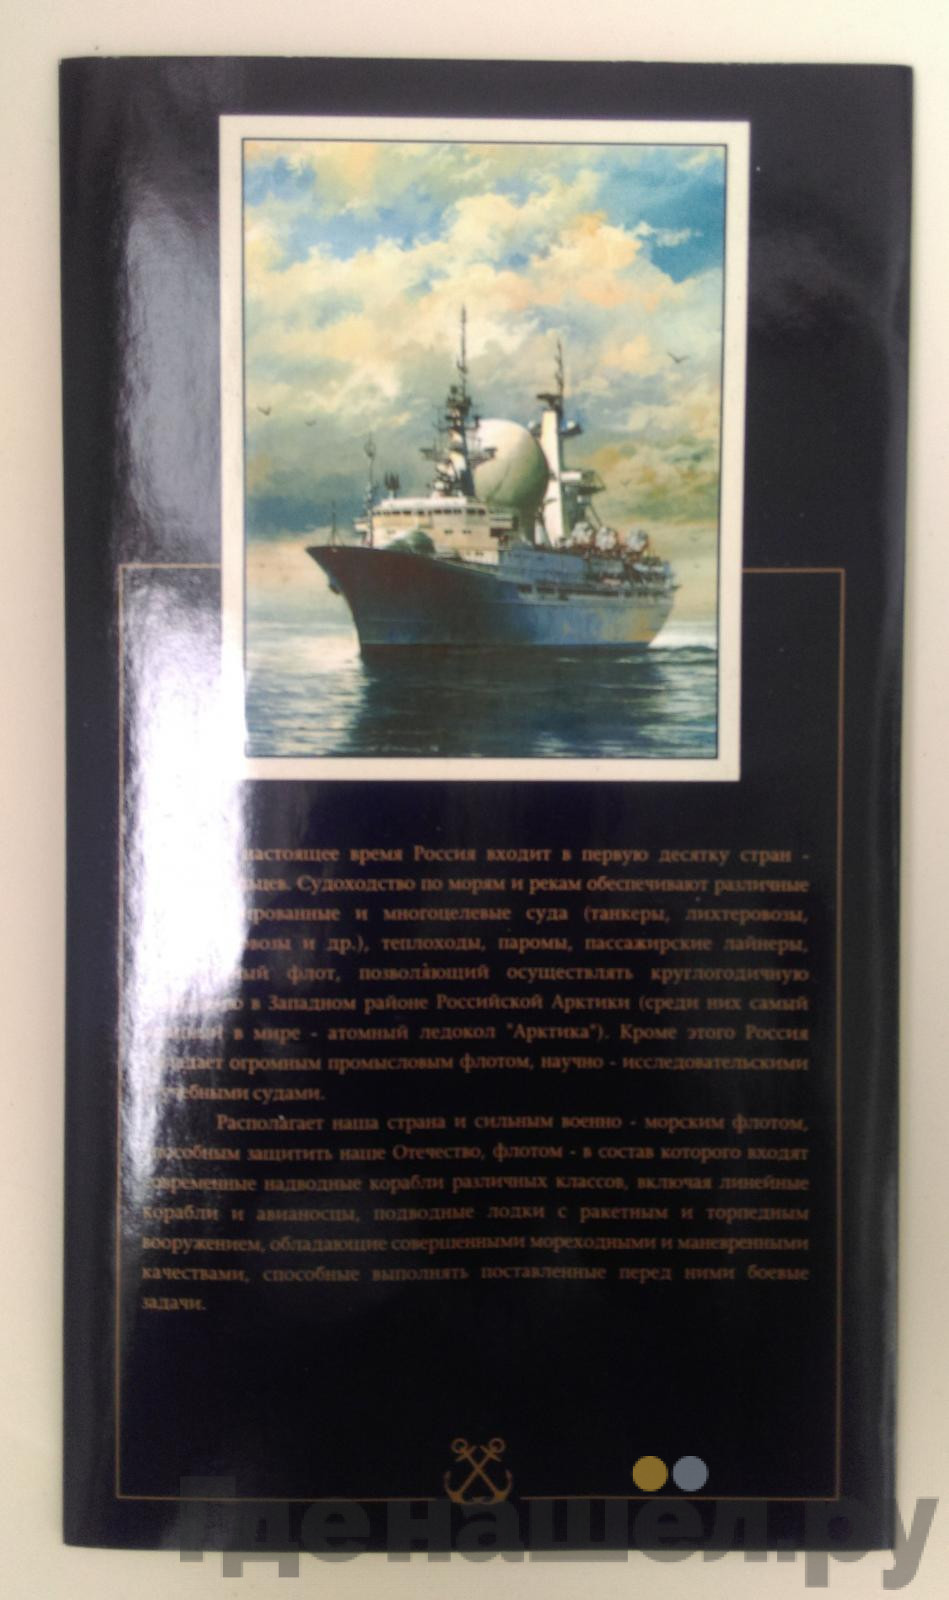 Годовой набор 1996 года ЛМД 300 лет Российского флота